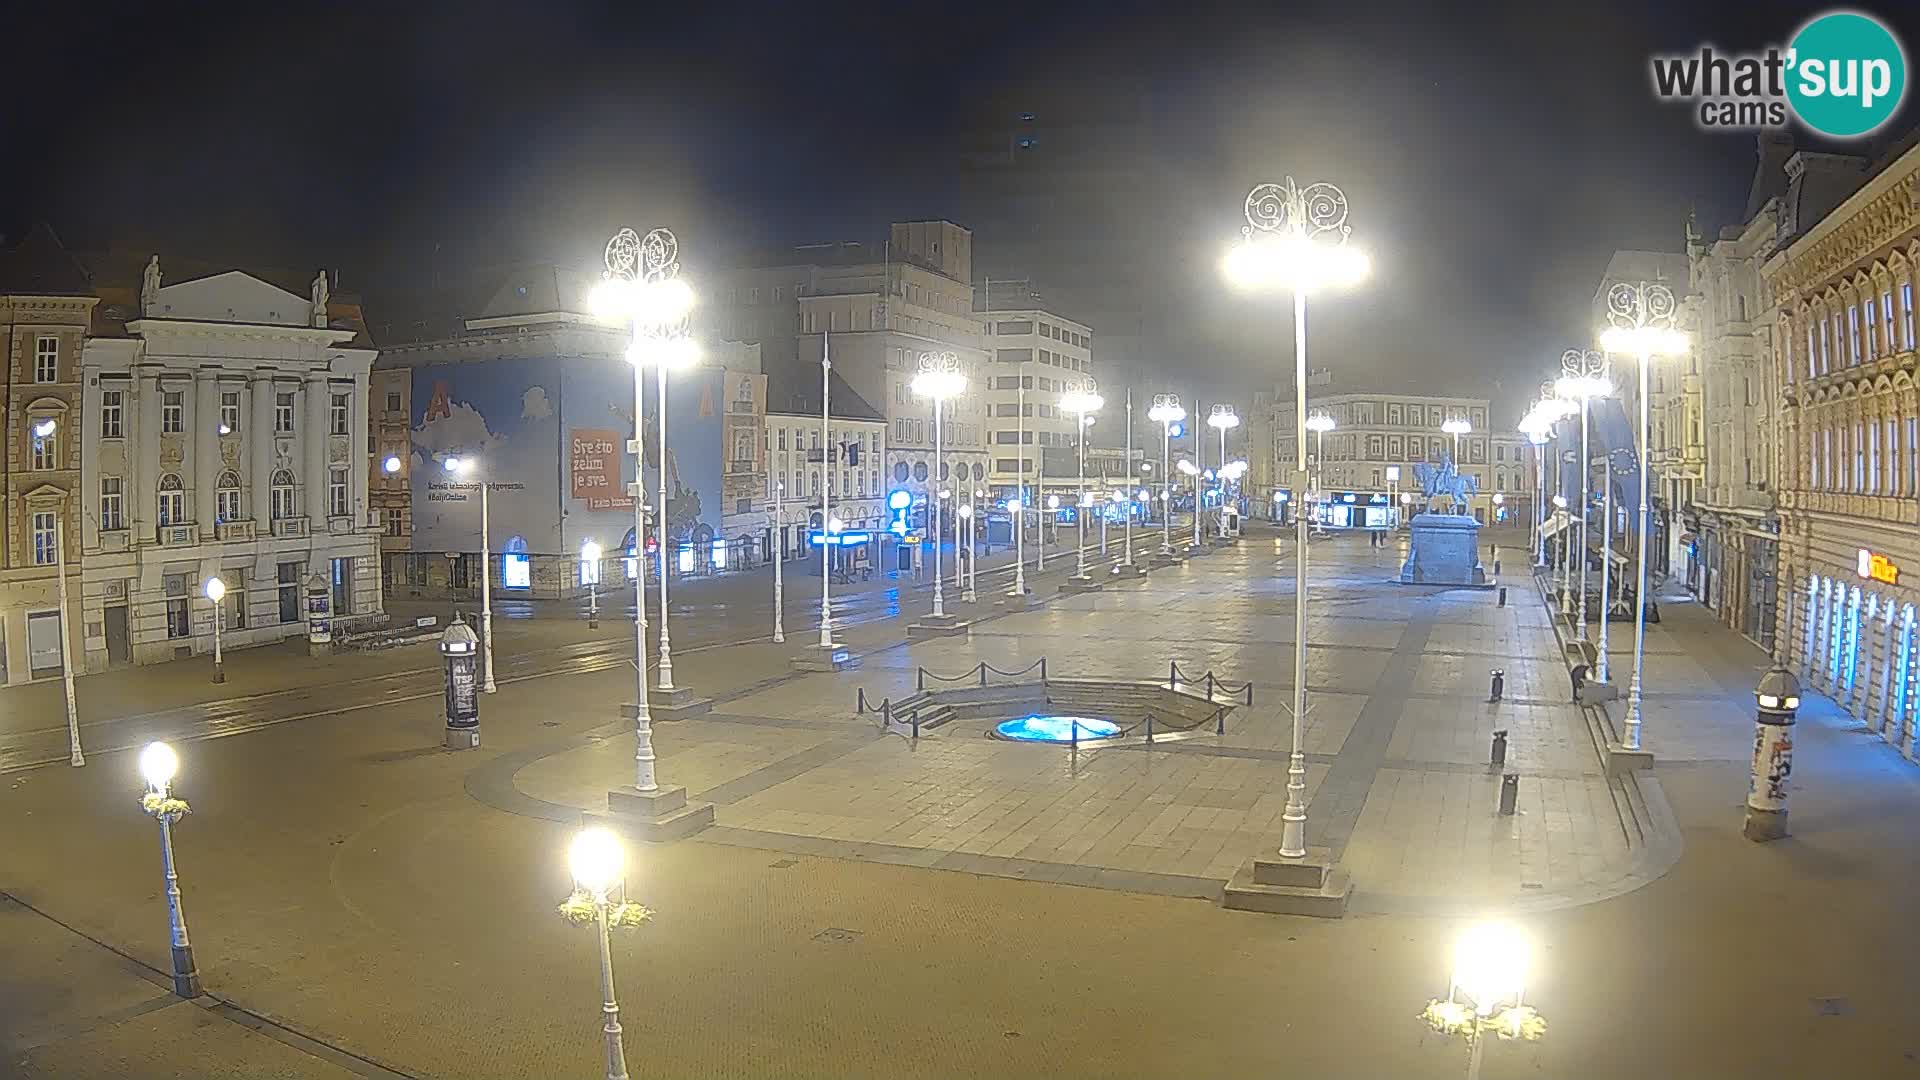 Zagreb Livecam – Bana Jelačić square